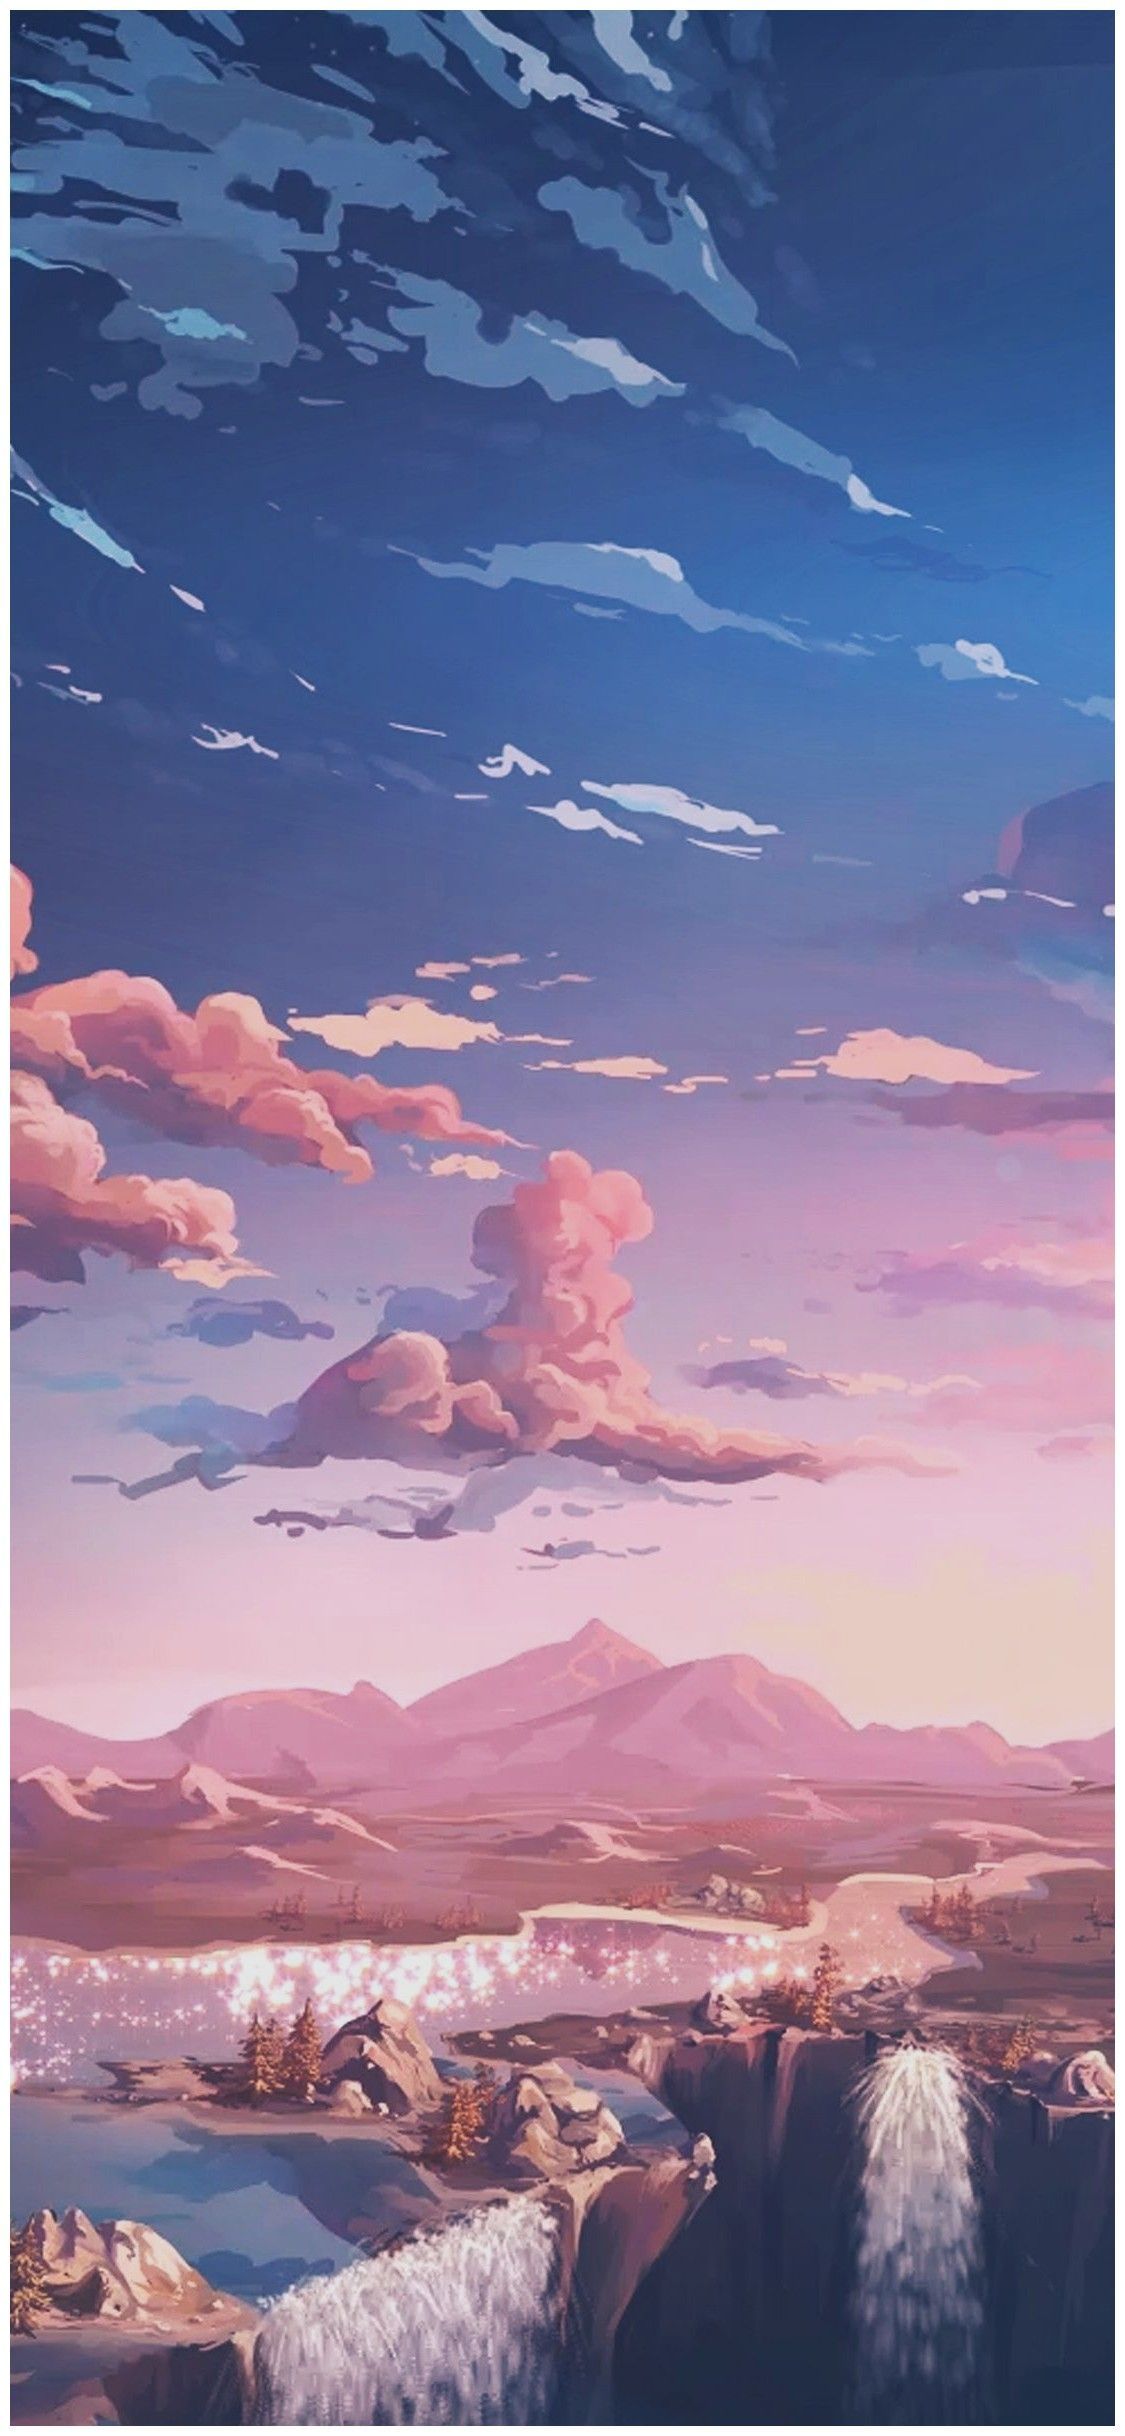 Aesthetic Wallpaper Anime. Anime wallpaper iphone, Anime scenery wallpaper, Scenery wallpaper